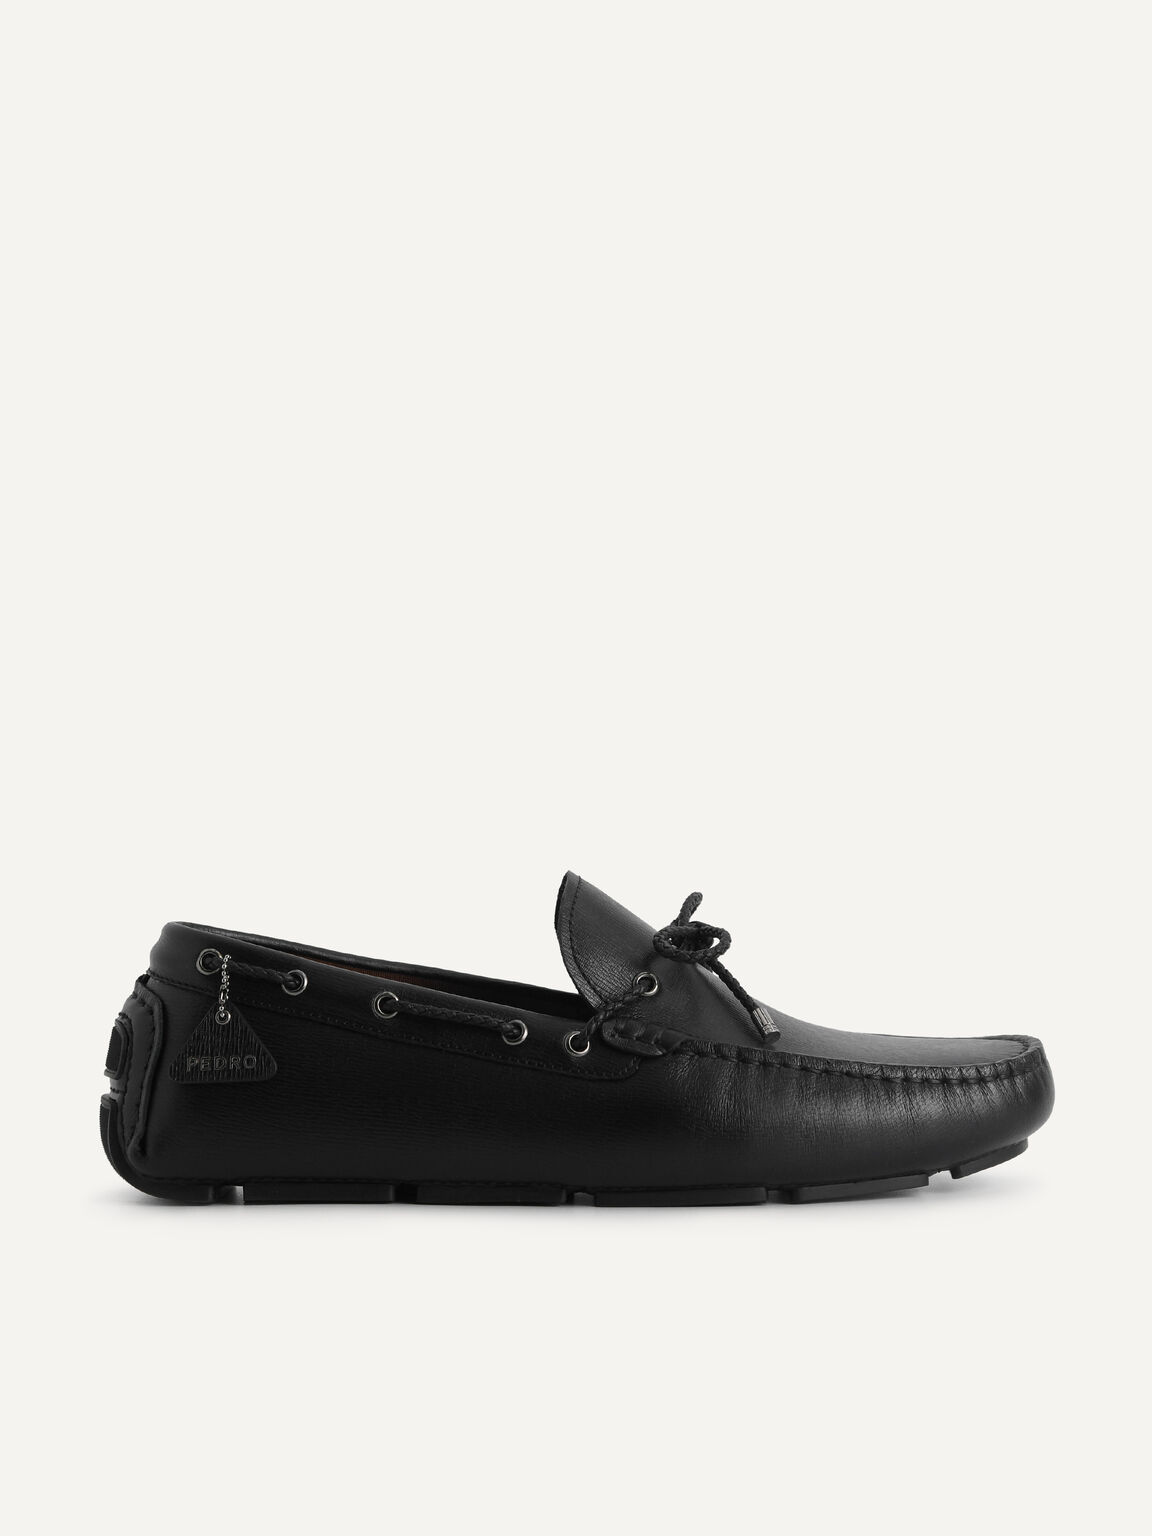 紋理牛皮莫卡辛鞋, 黑色